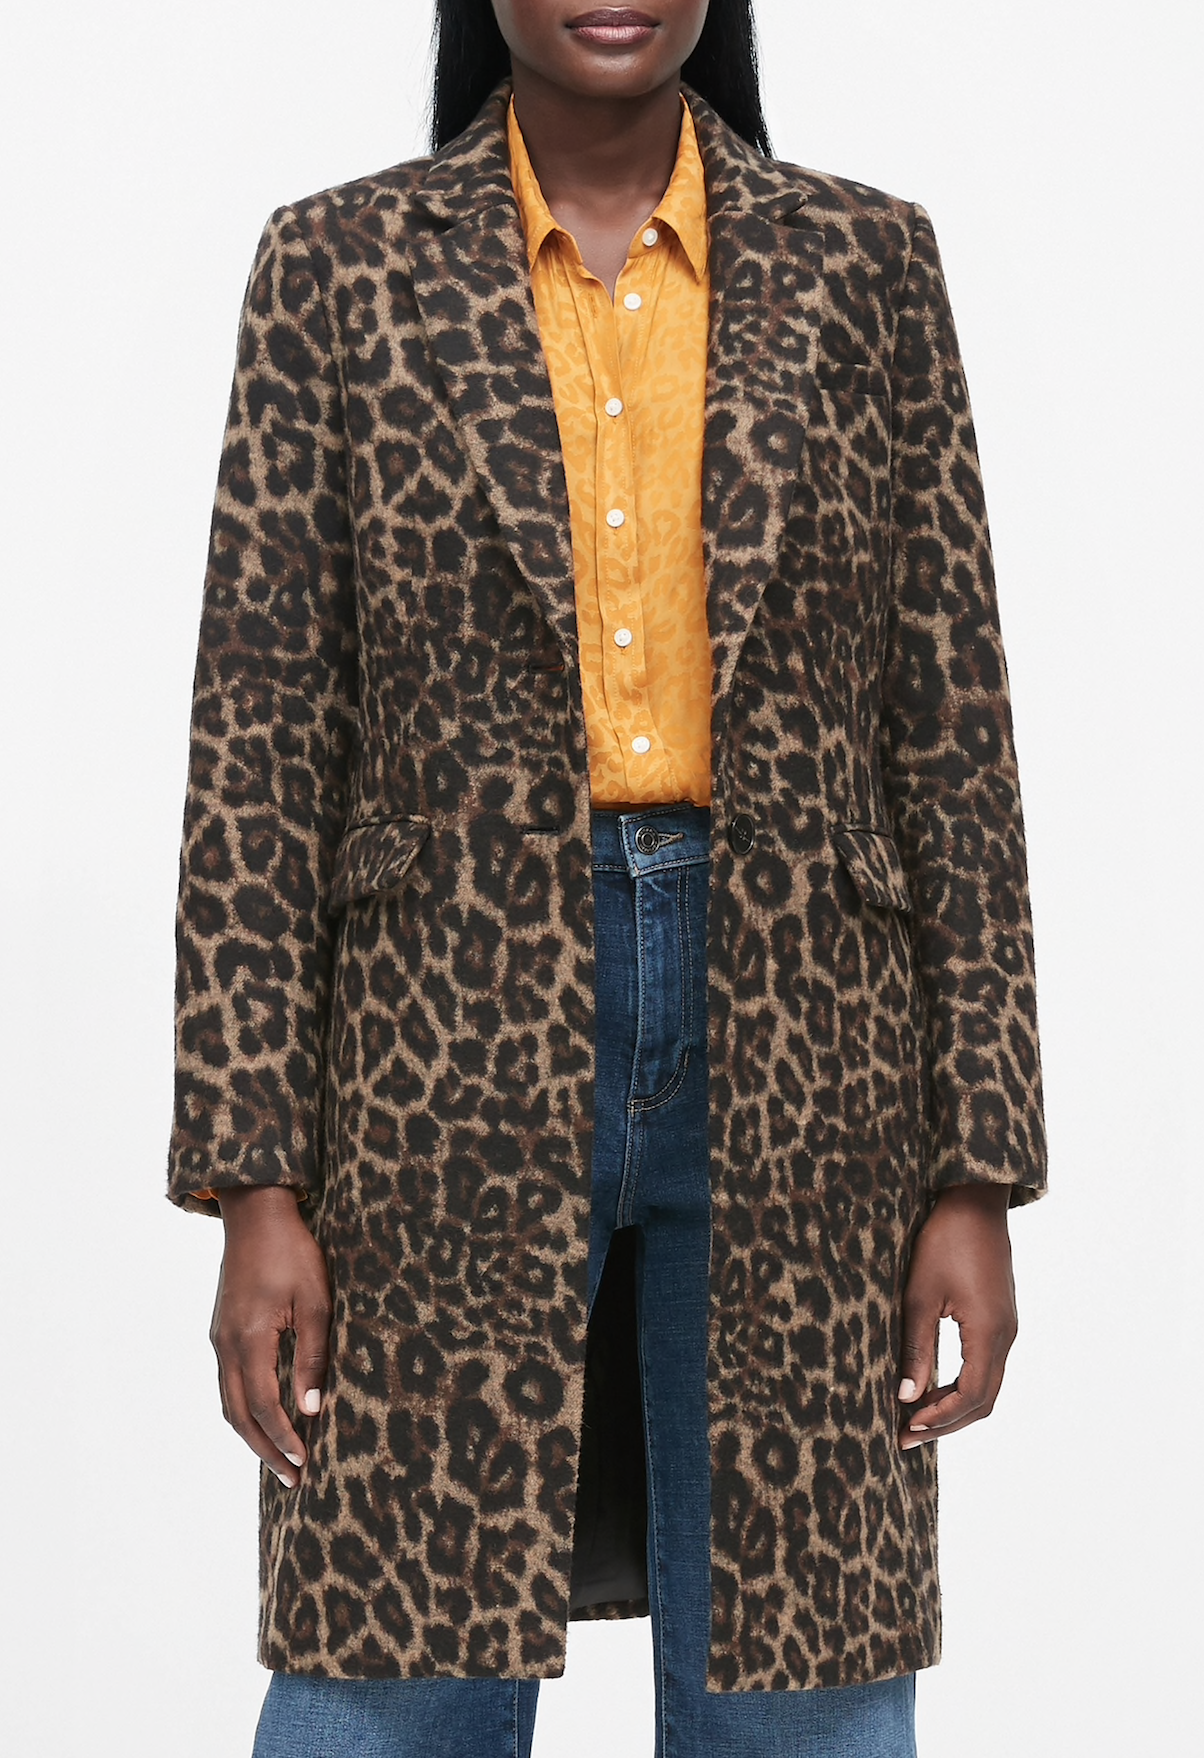 Leopard Print Top Coat